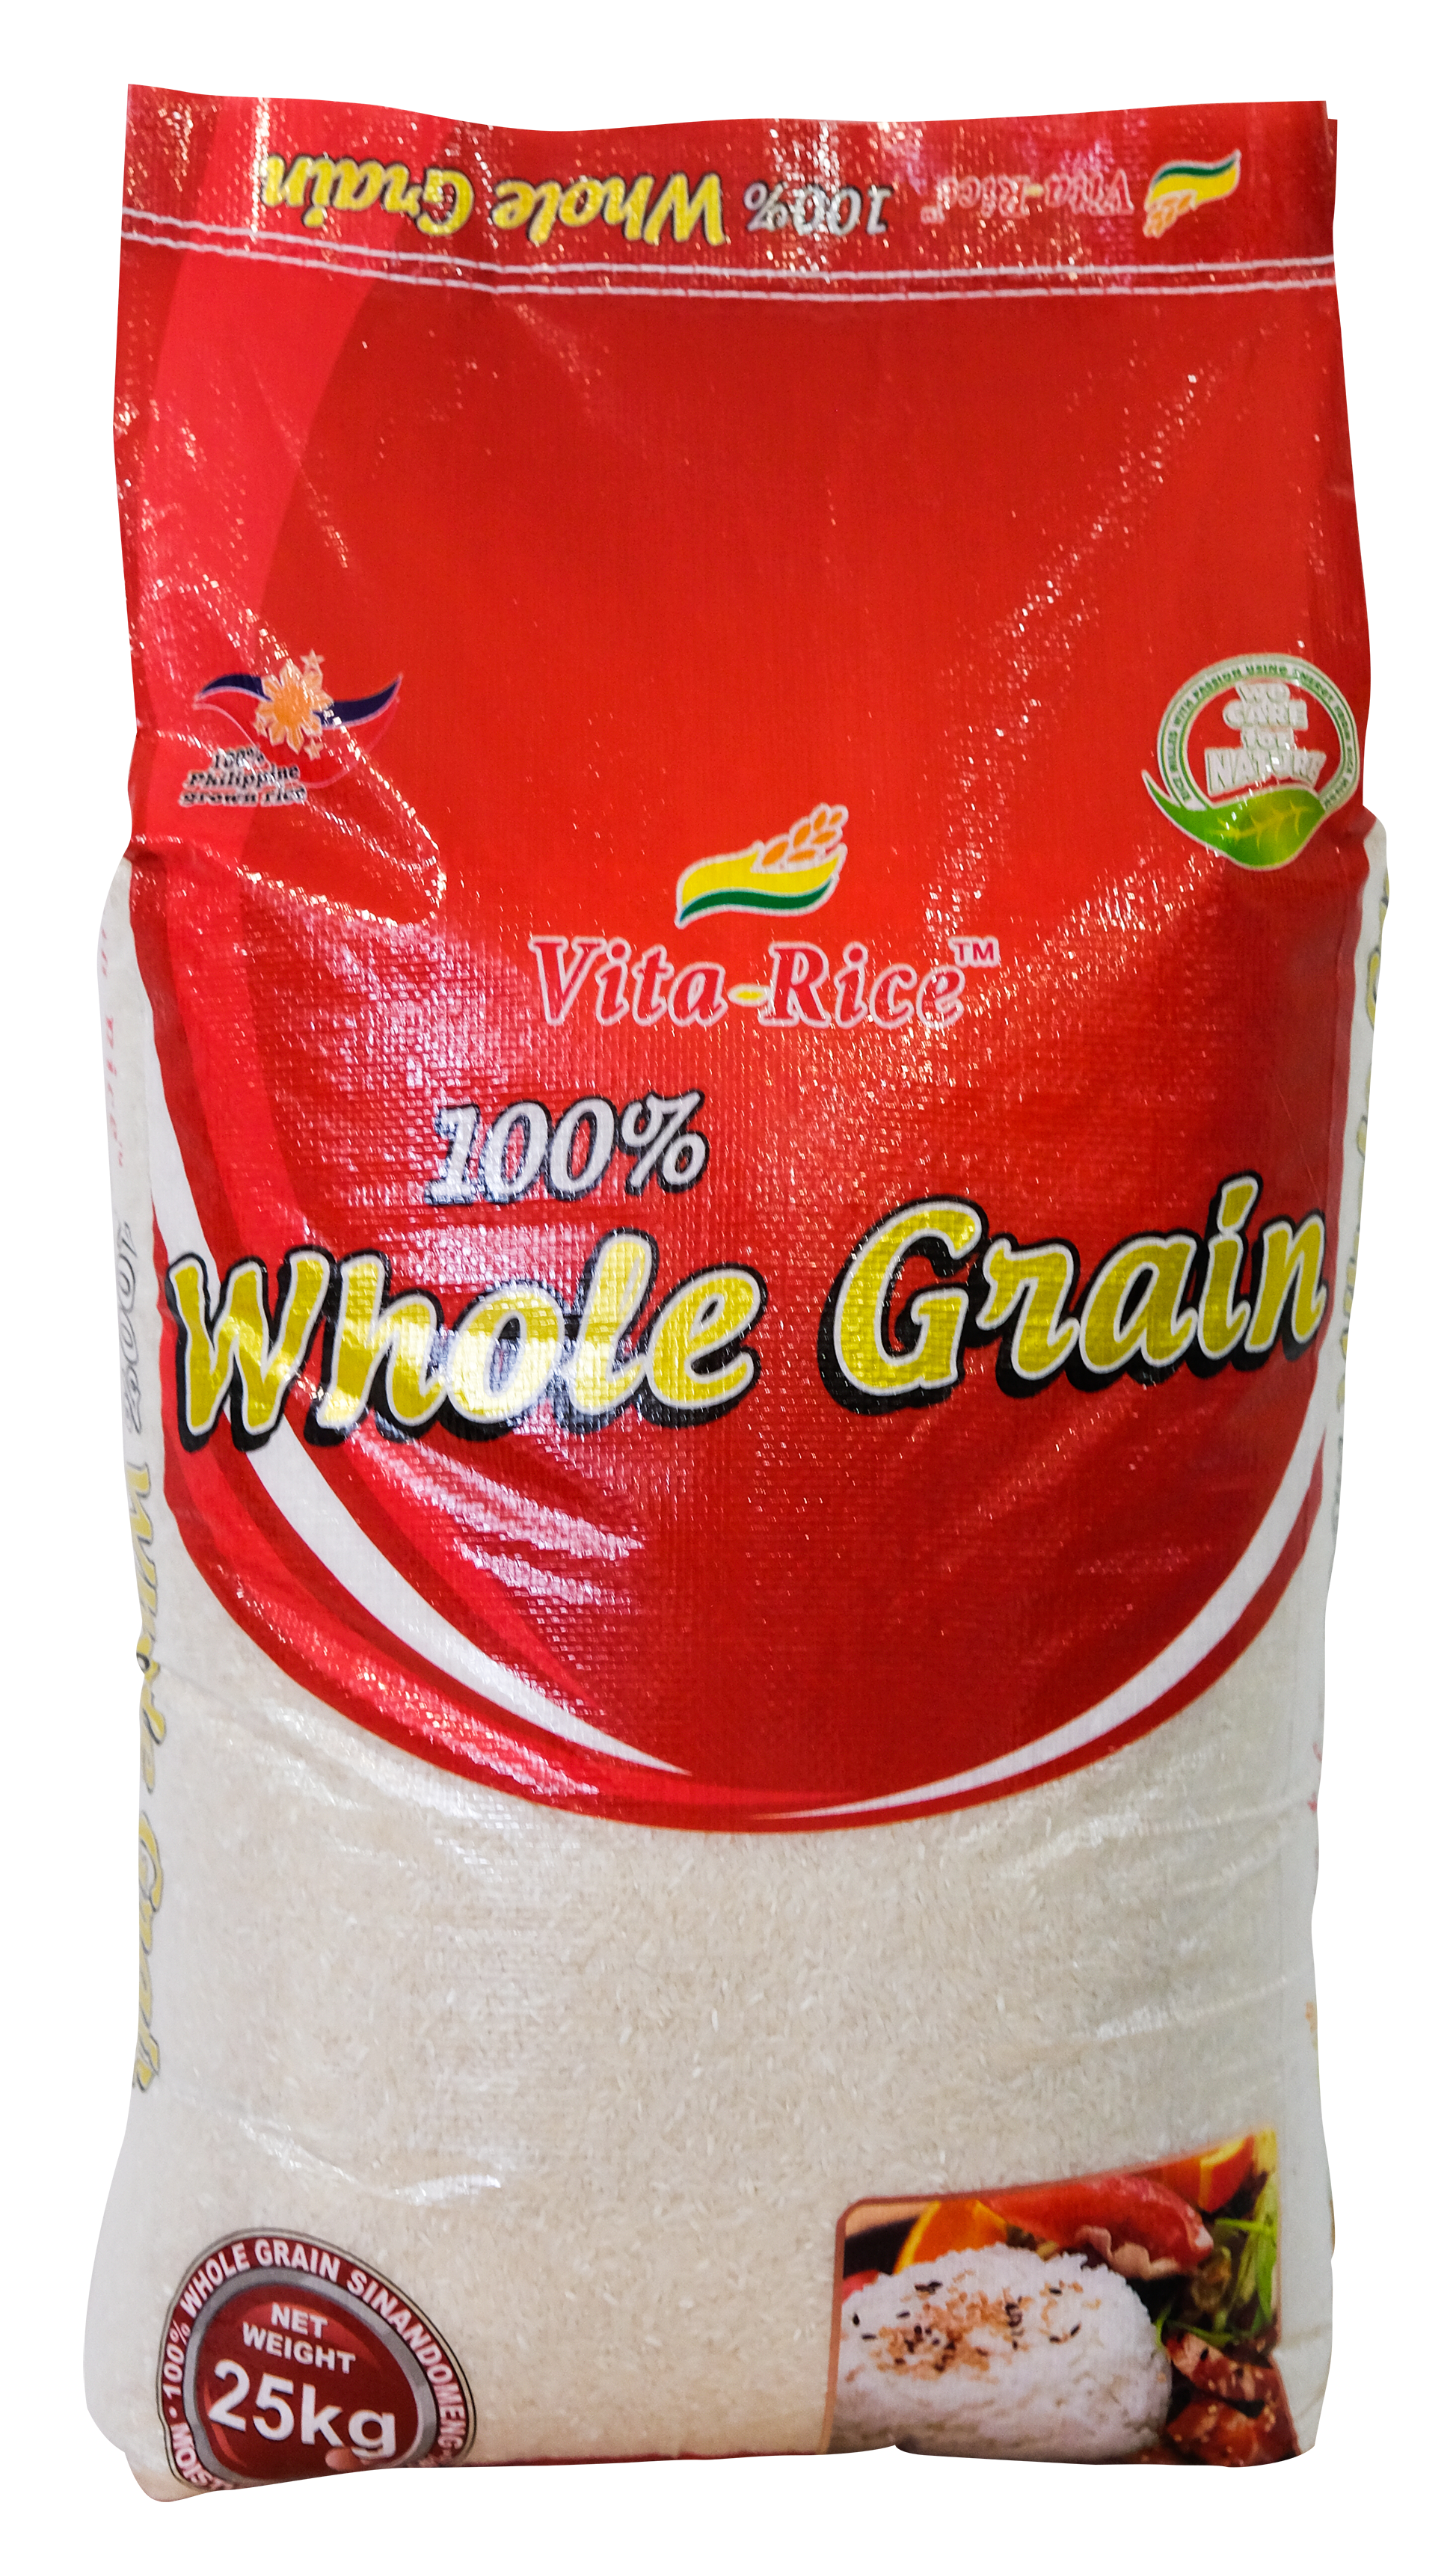 Vita-Rice 100% Whole Grain